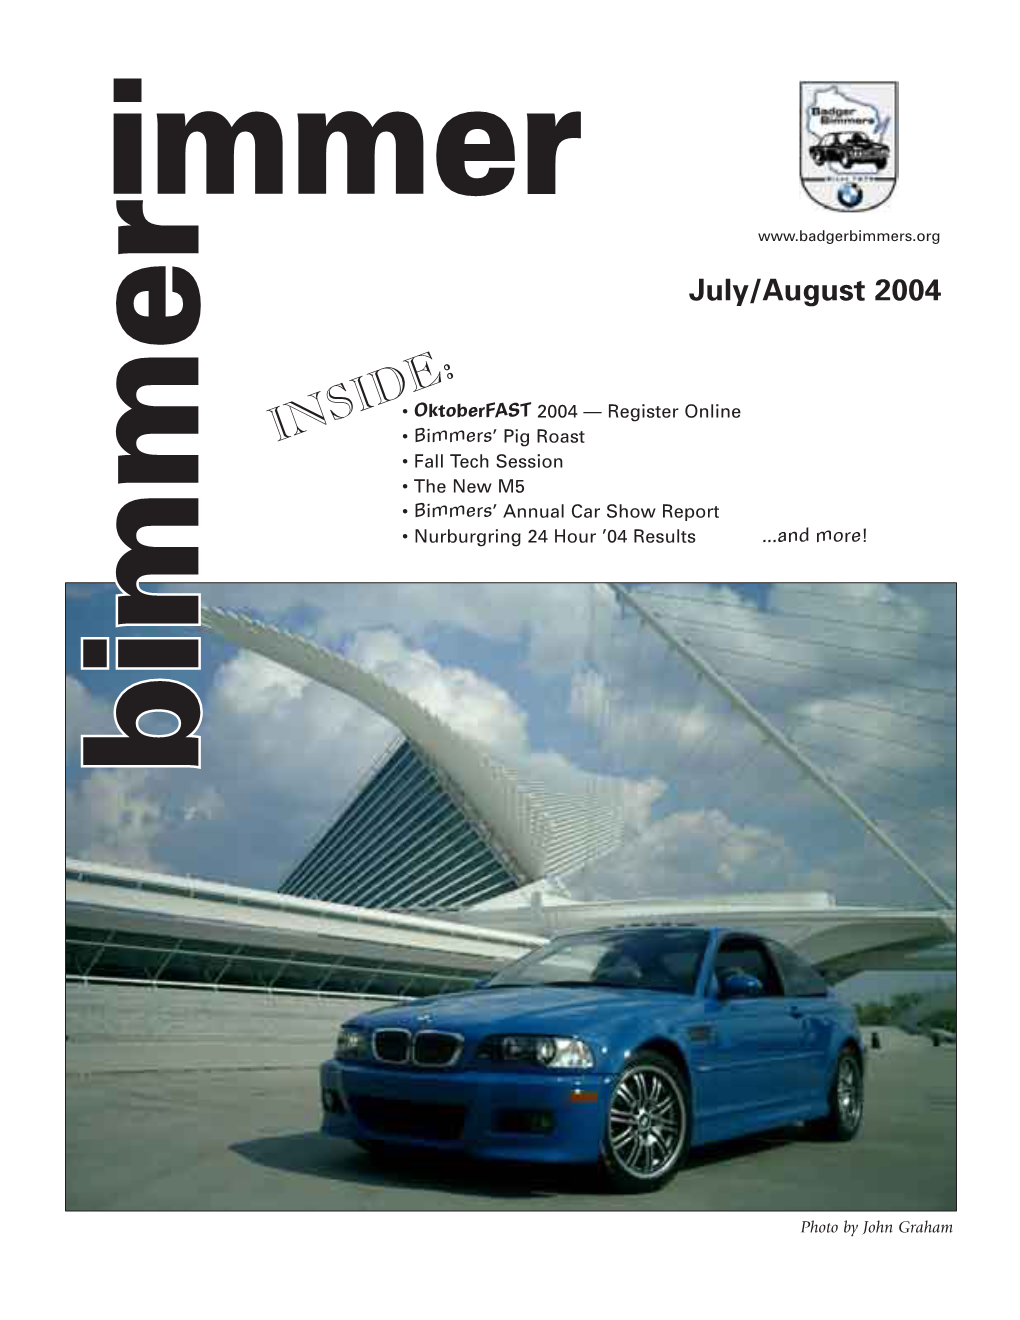 July/August 2004 Bimmer Immer